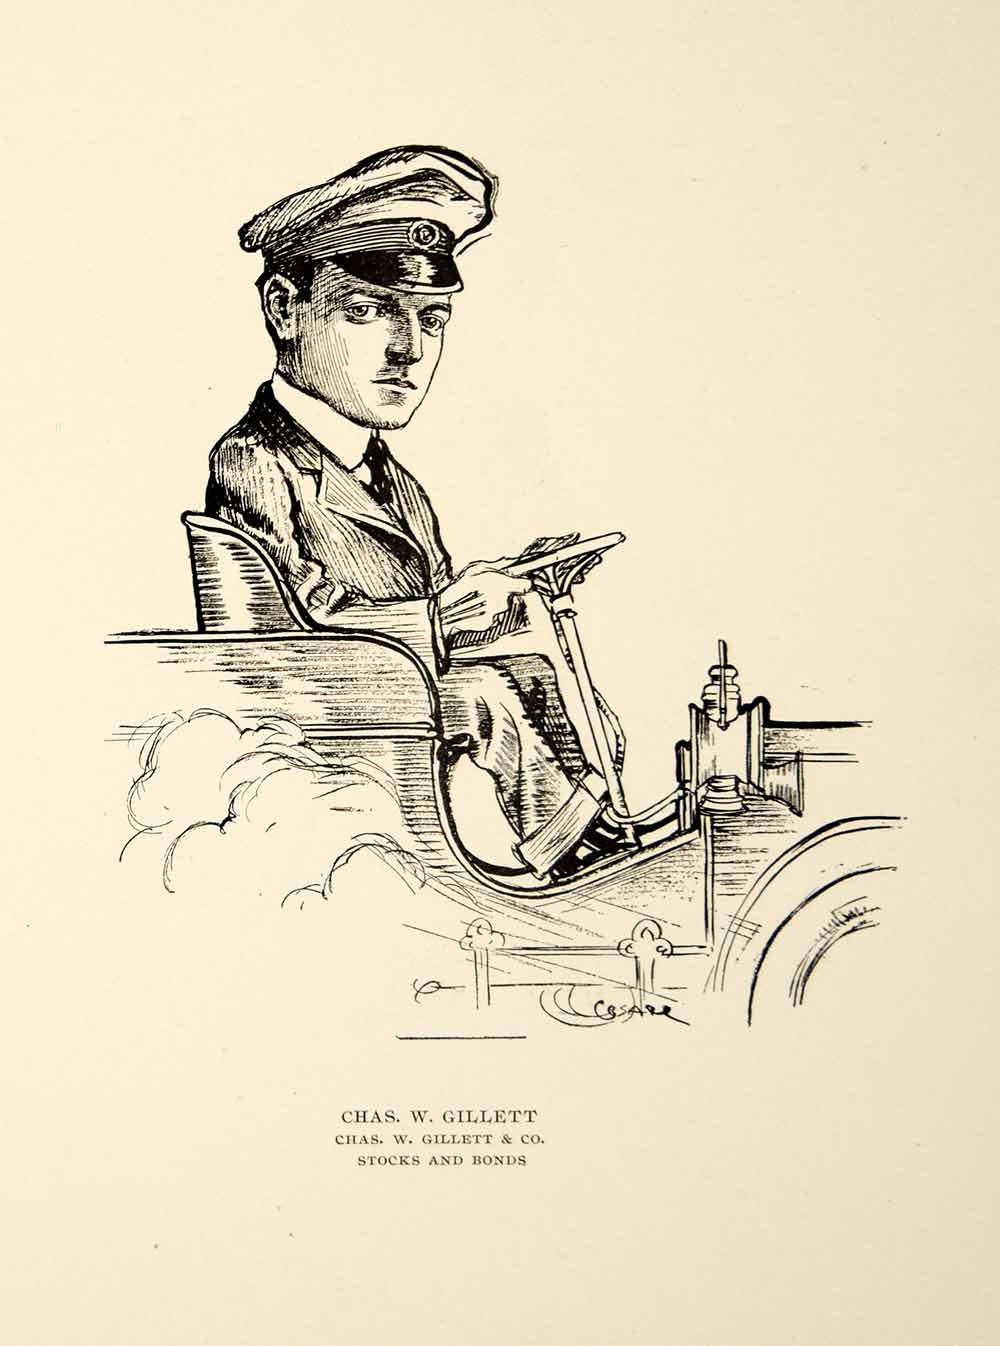 1904 Lithograph Chas. W. Gillett Company Chicago Illinois O.E. Cesare Art CPC1